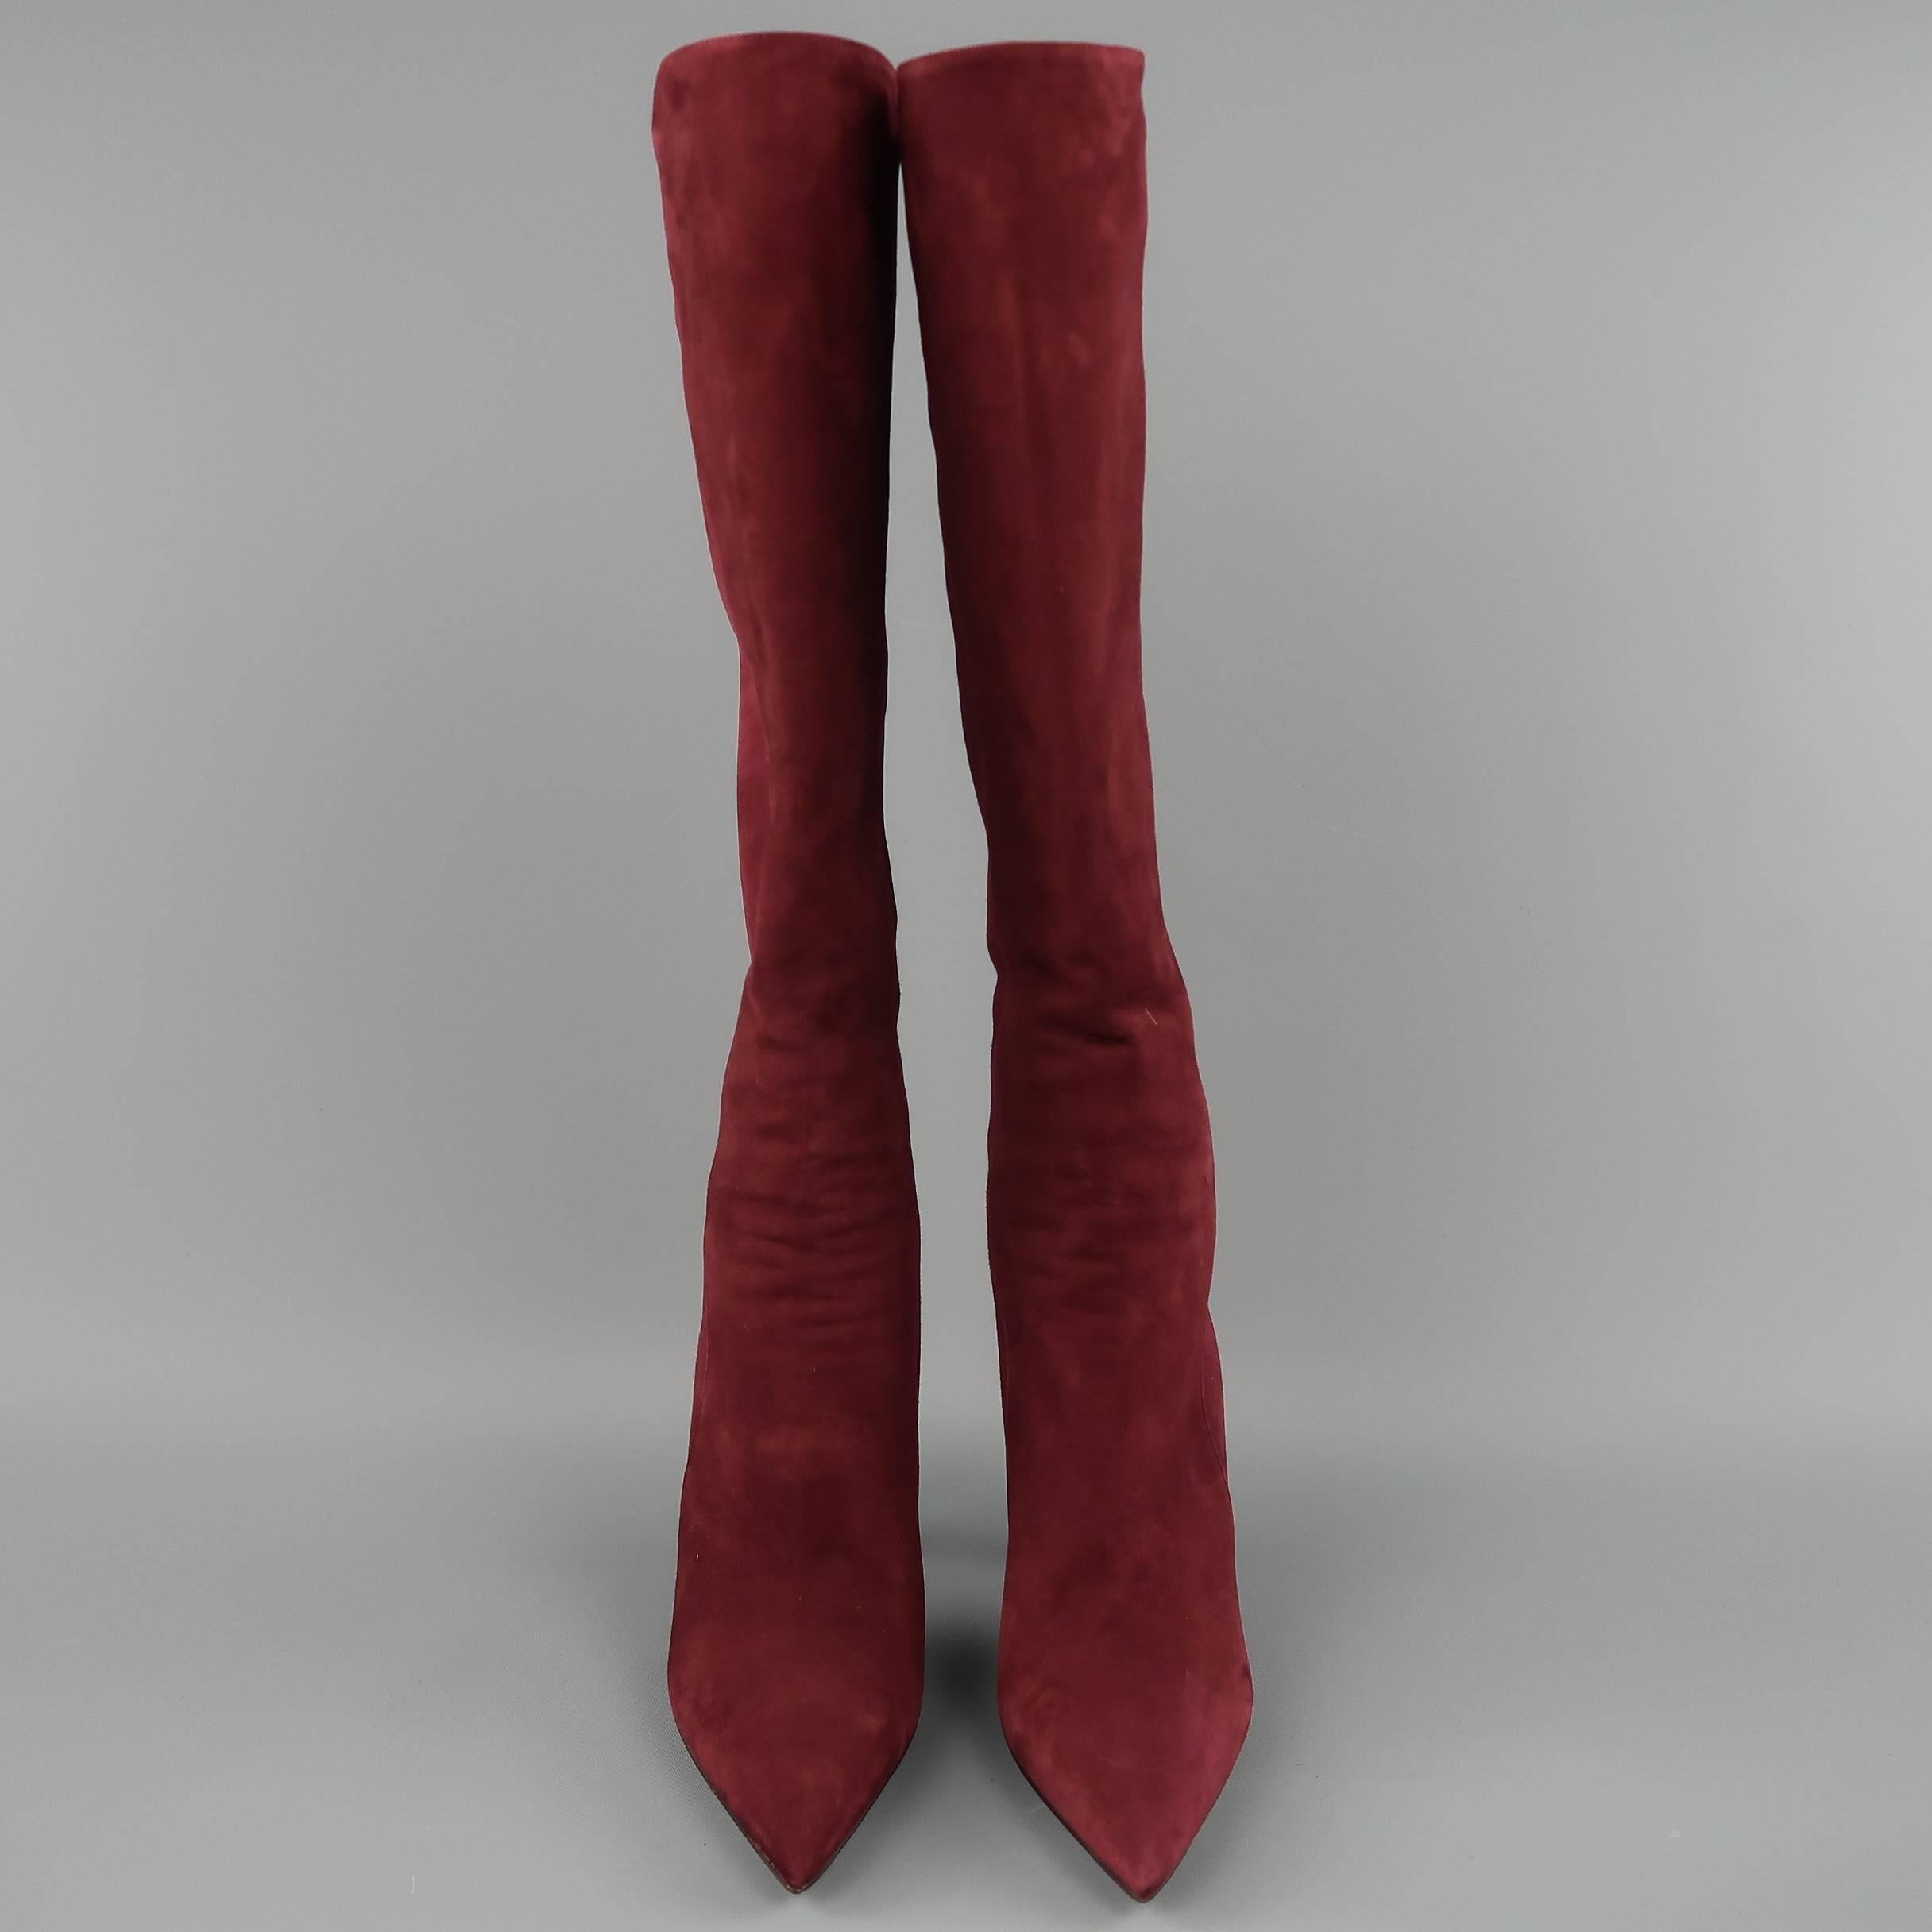 Women's PRADA Size 8.5 Burgundy Suede Pointed Knee High Stiletto Boots